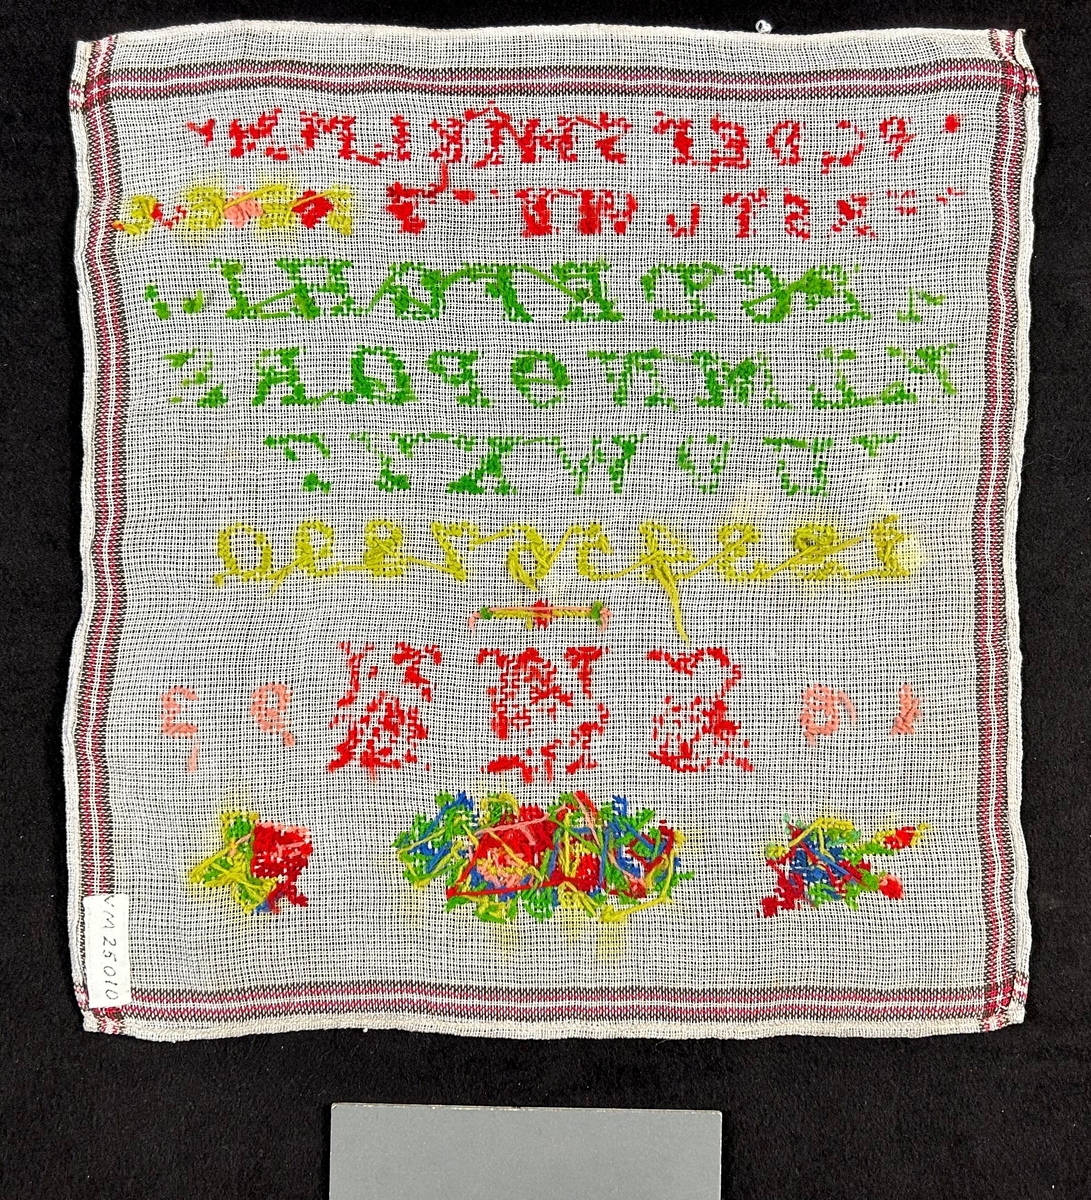 Märkduk på vit botten med korssömsbroderi i rött och grönt. Alfabetet och siffror broderade i rader, Undertill ett monogram: S.M.N. och årtalet 1893. Längst ned blommor.